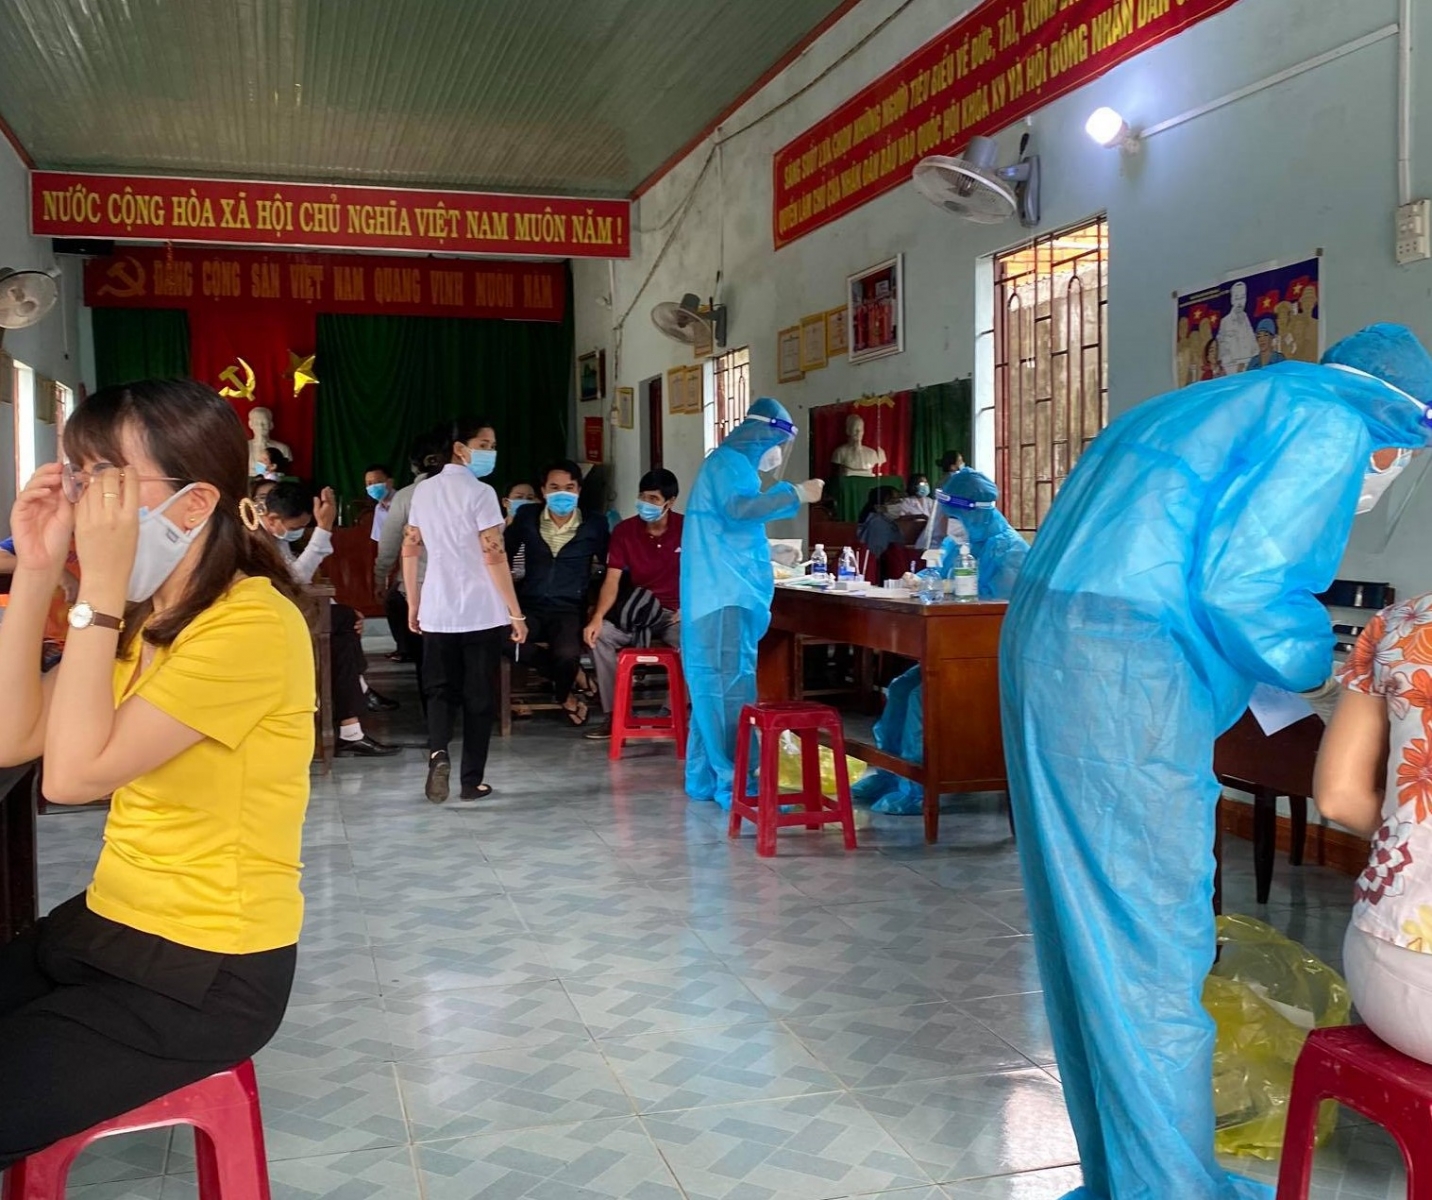 Cán bộ, giáo viên của trường THPT Lắk và THPT Nguyễn Chí Thanh sẽ được test nhanh kháng nguyên SARS-CoV-2 trước khi lên đường làm nhiệm vụ coi thi ở các địa phương khác (ảnh: Quang Định).